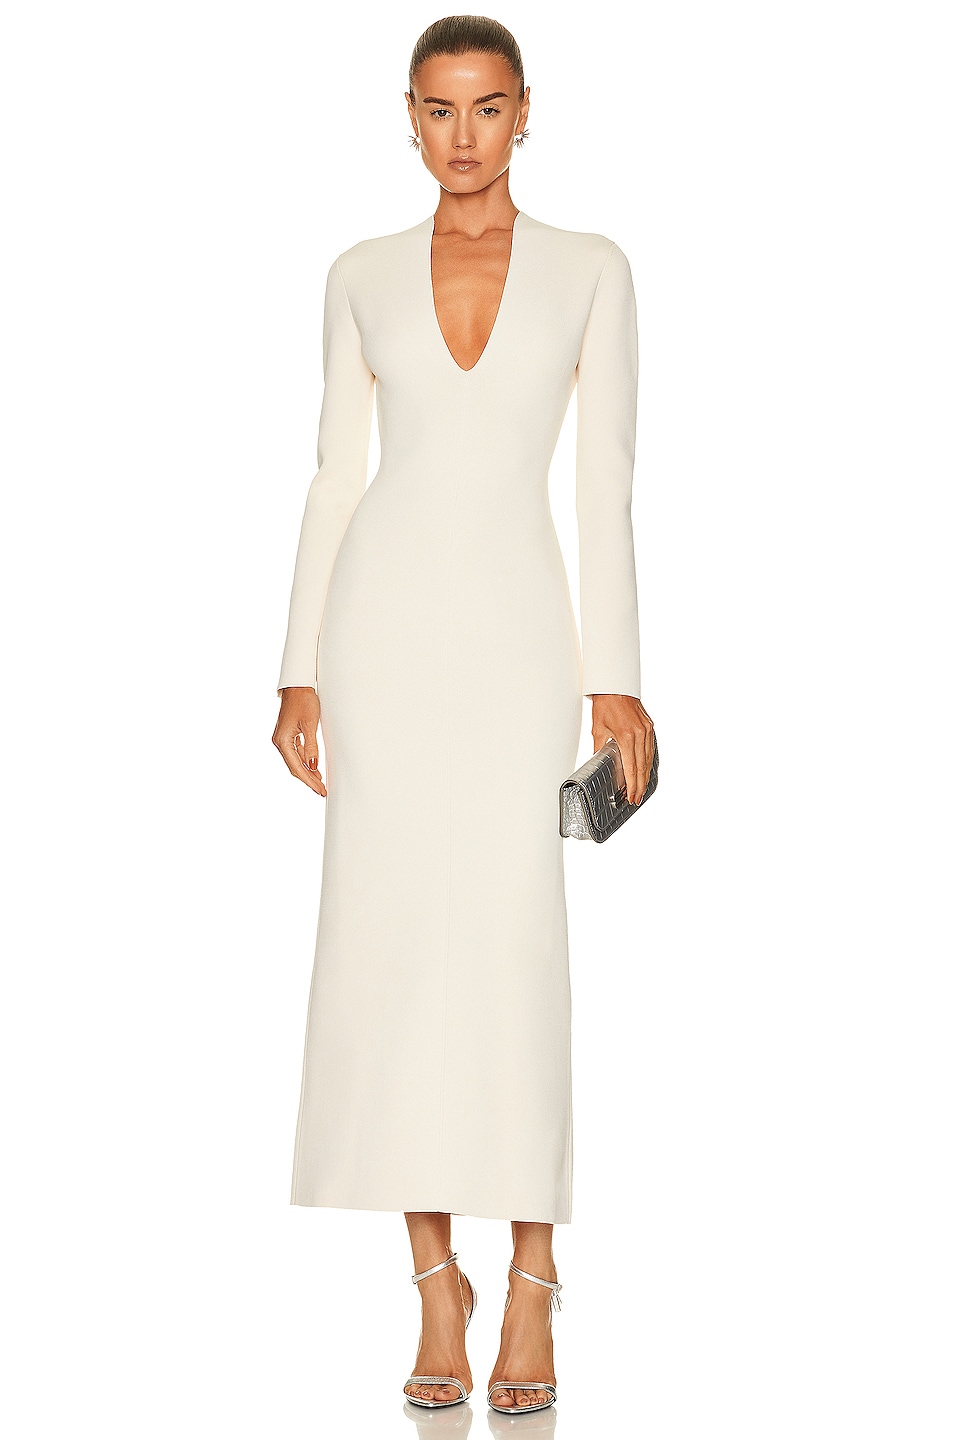 KHAITE Odette Dress in Ivory | FWRD